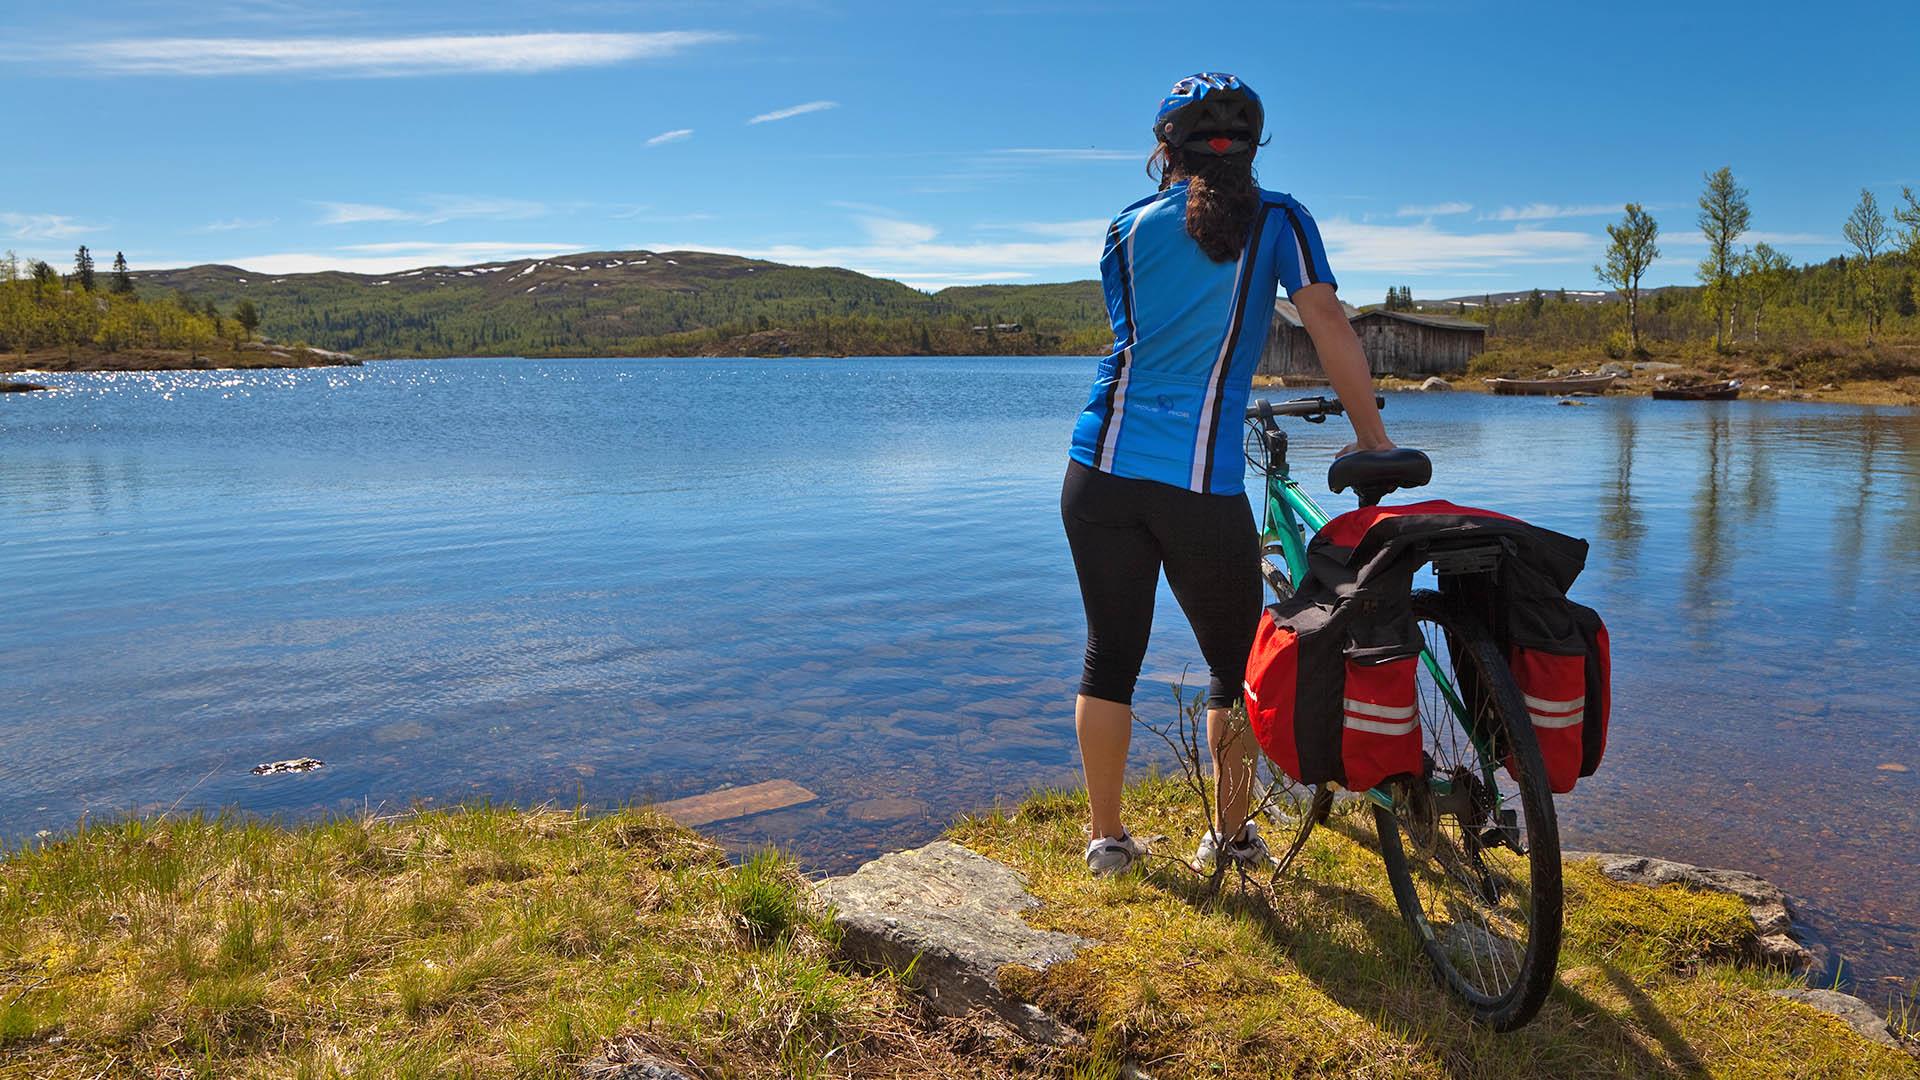 Eine Radfahrerin in Radkleidung steht neben ihrem Rad am Ufer eines Bergsees.